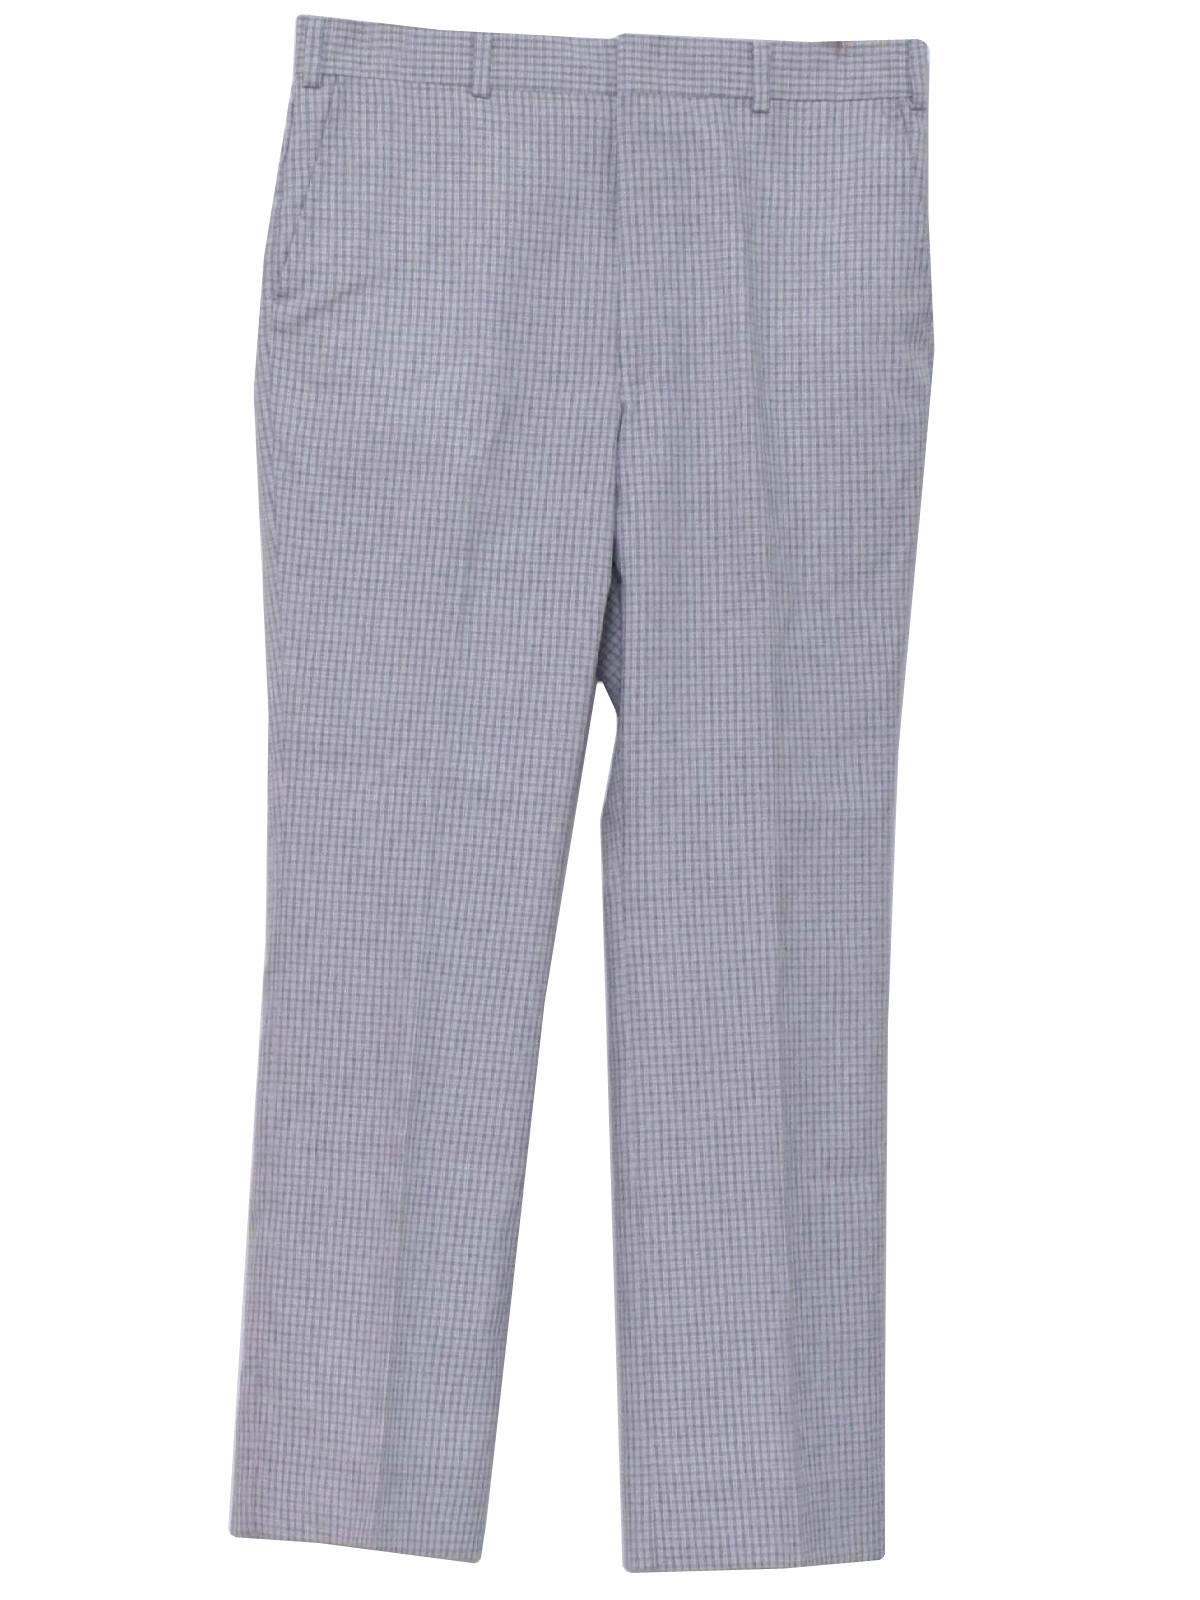 Vintage 1970's Pants: 70s -No Label- Mens light blue and white subtle ...